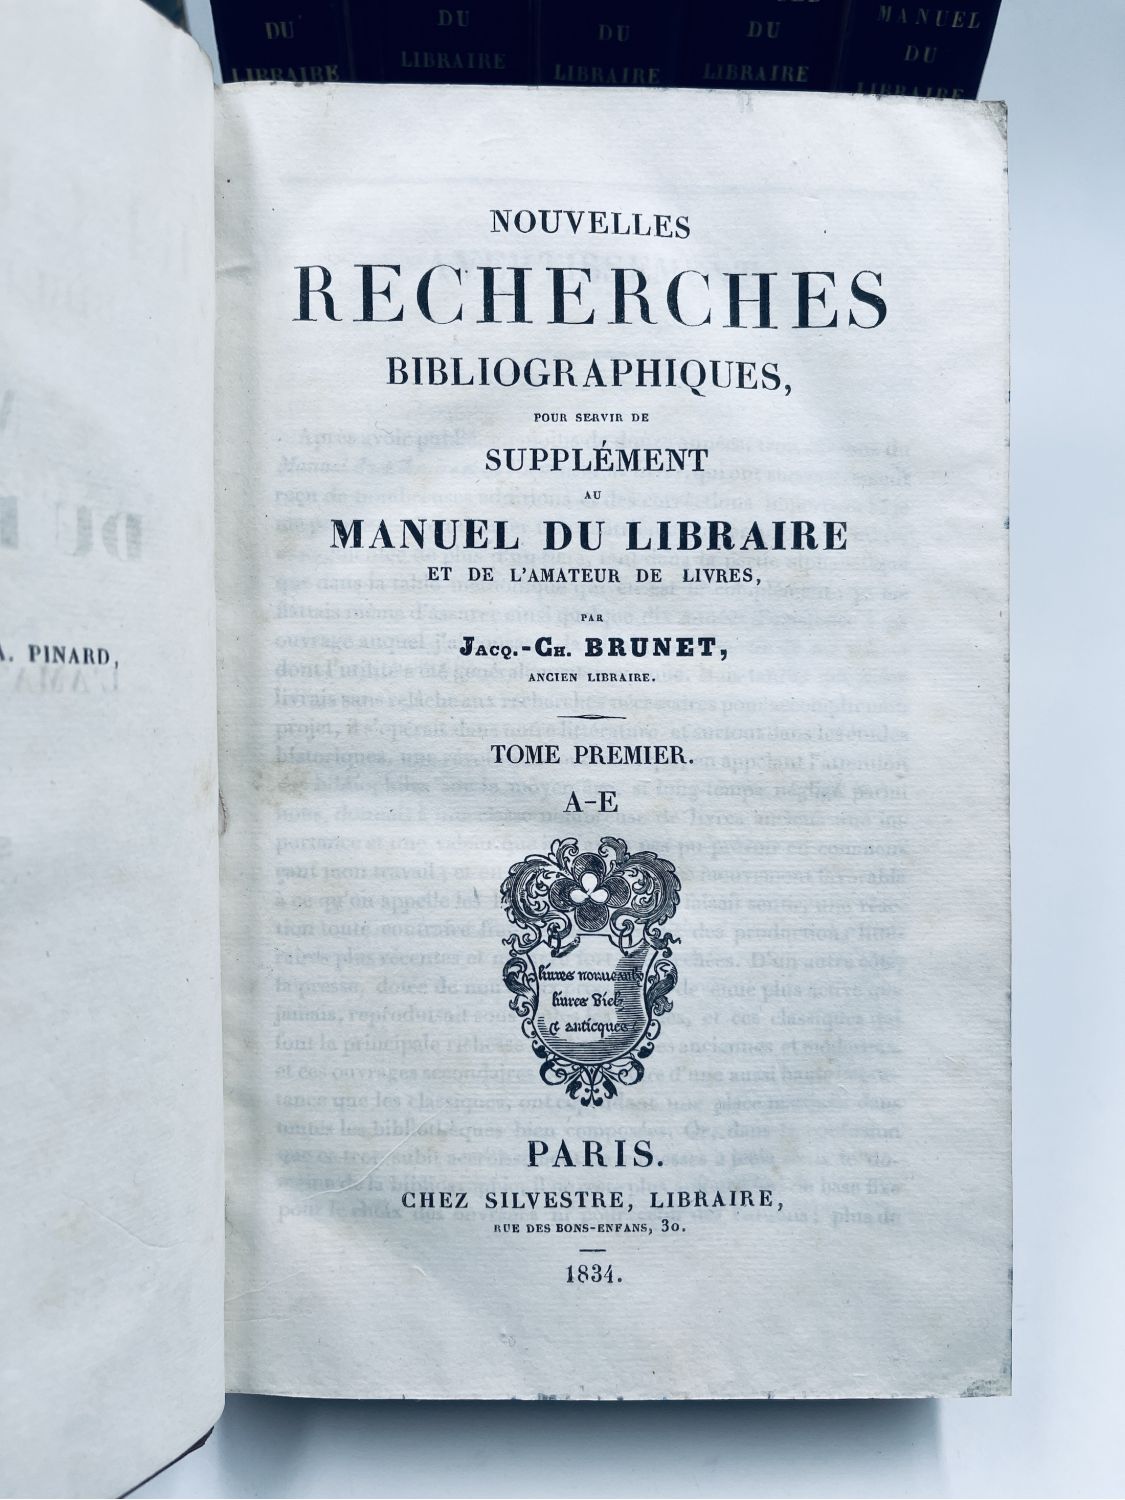 Manuel du libraire et de l'amateur de livres (1864) - Bayerische  Staatsbibliothek